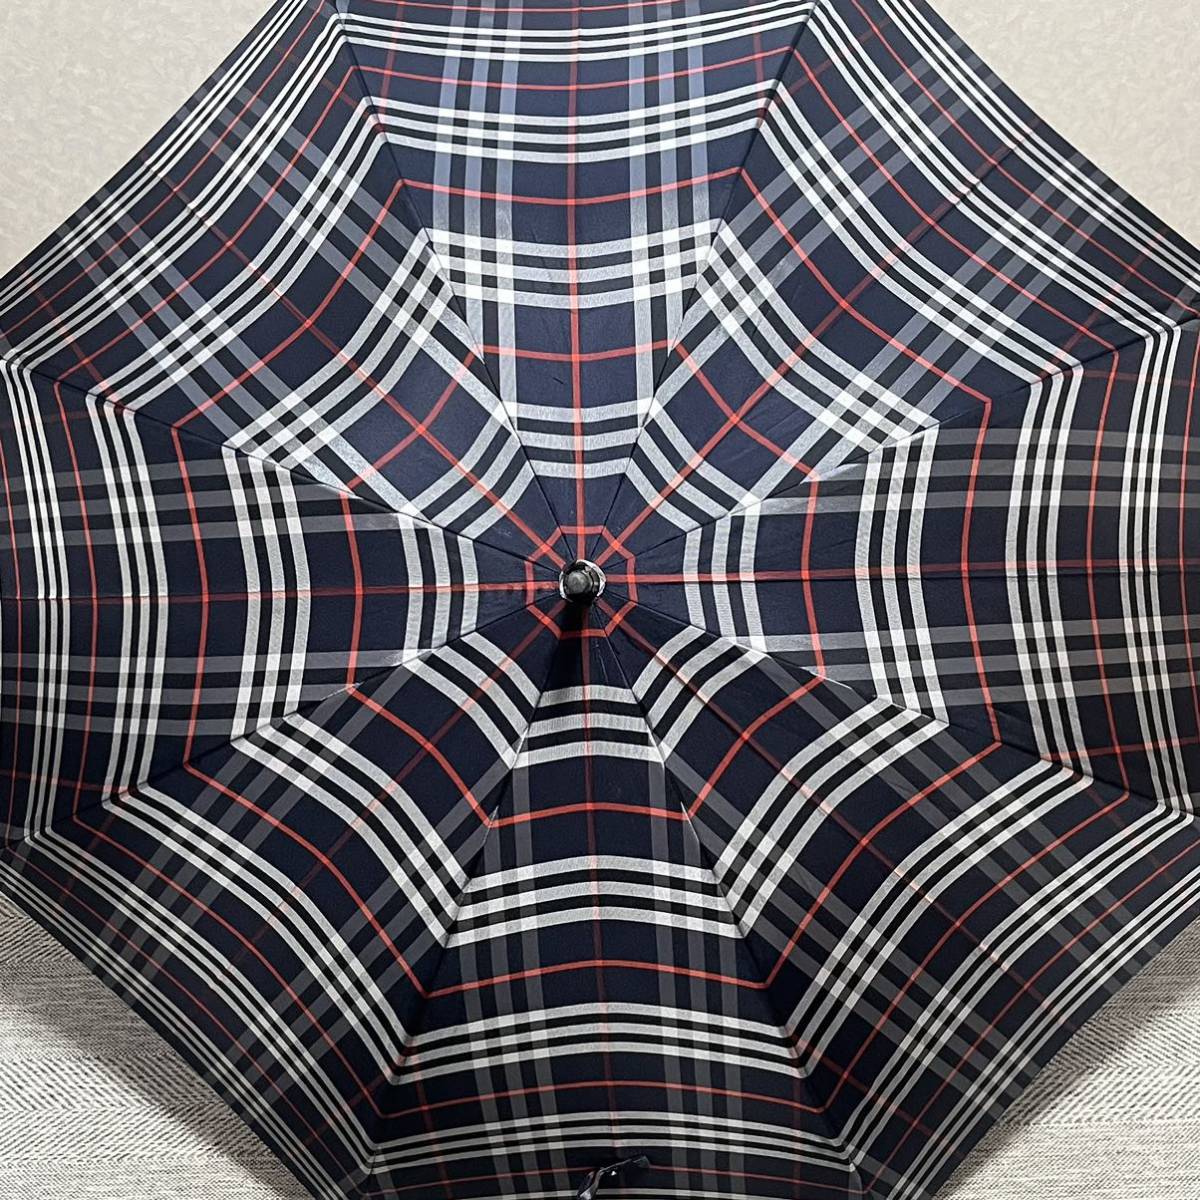 BURBERRY Burberry noba проверка чёрный темно-синий из дерева umbrella длинный зонт 1 шт зонт для мужчин и женщин 